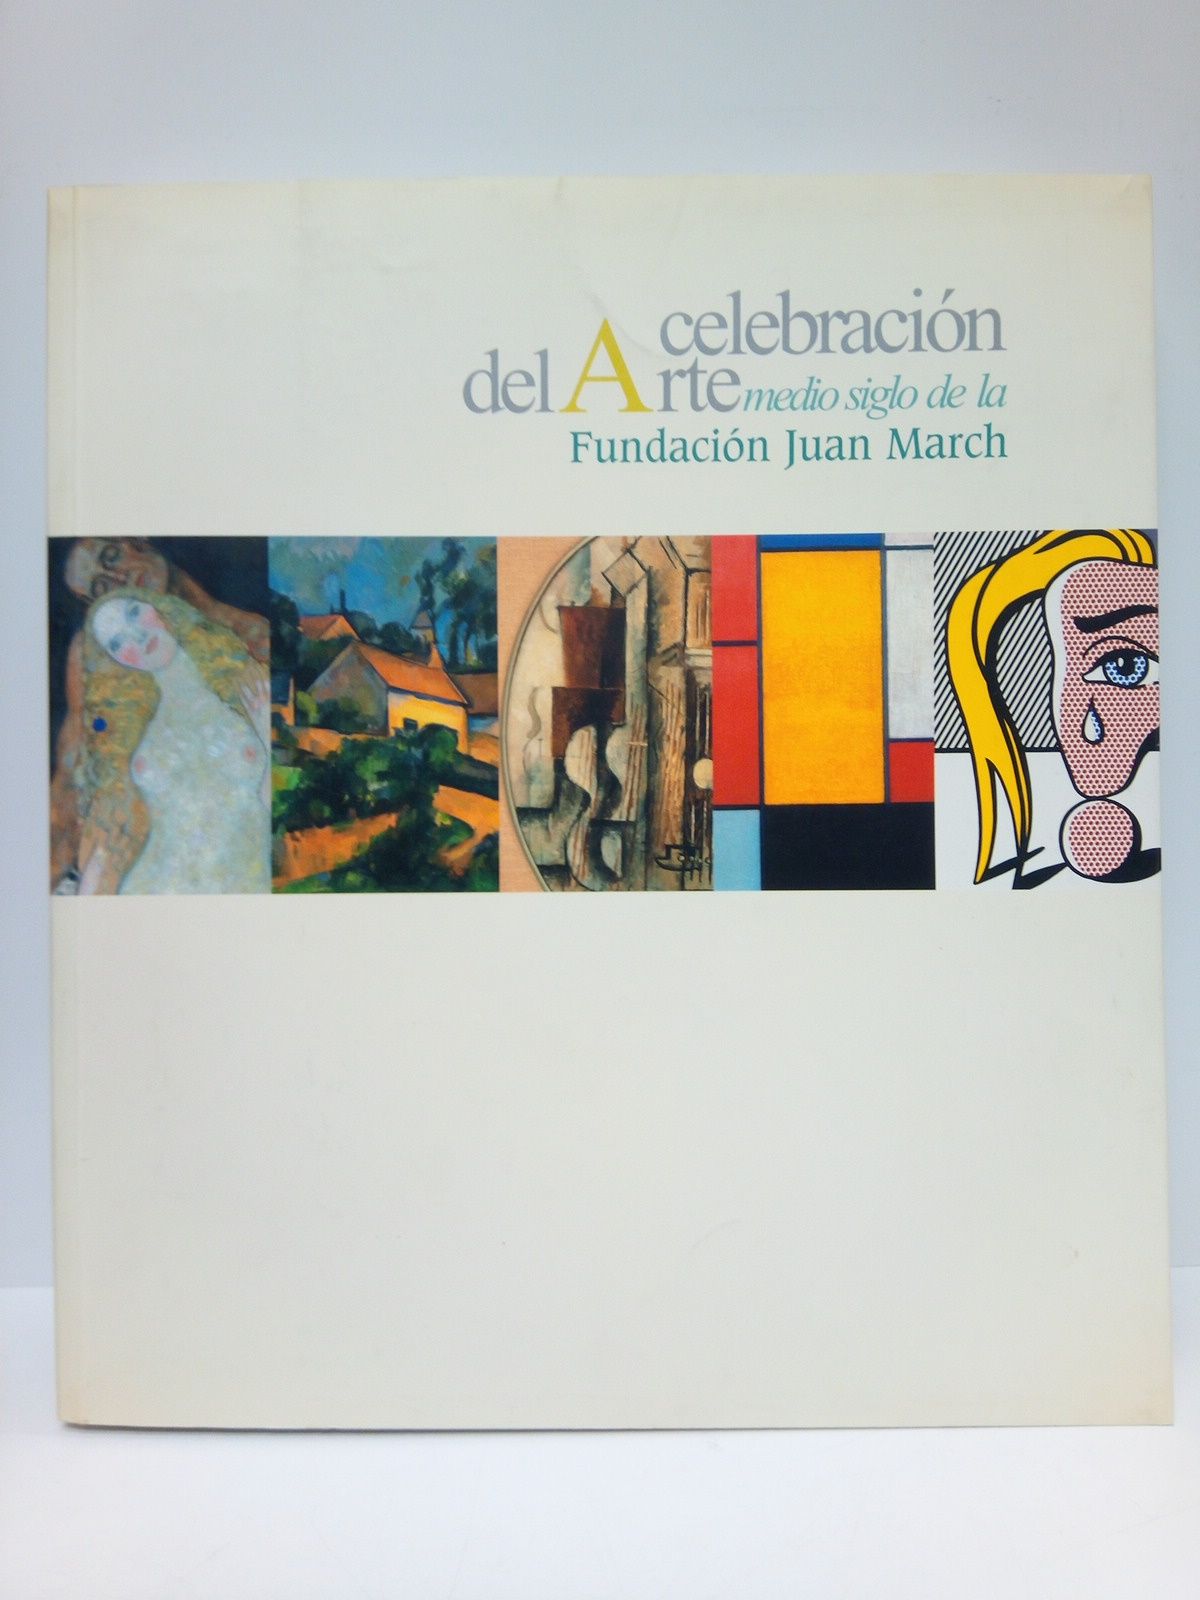 FUNDACION JUAN MARCH [lo publica] - Celebracin del Arte: medio siglo de la Fundacin Juan March. [Exposicin] 7 Octubre 2005 - 15 Enero 2006]